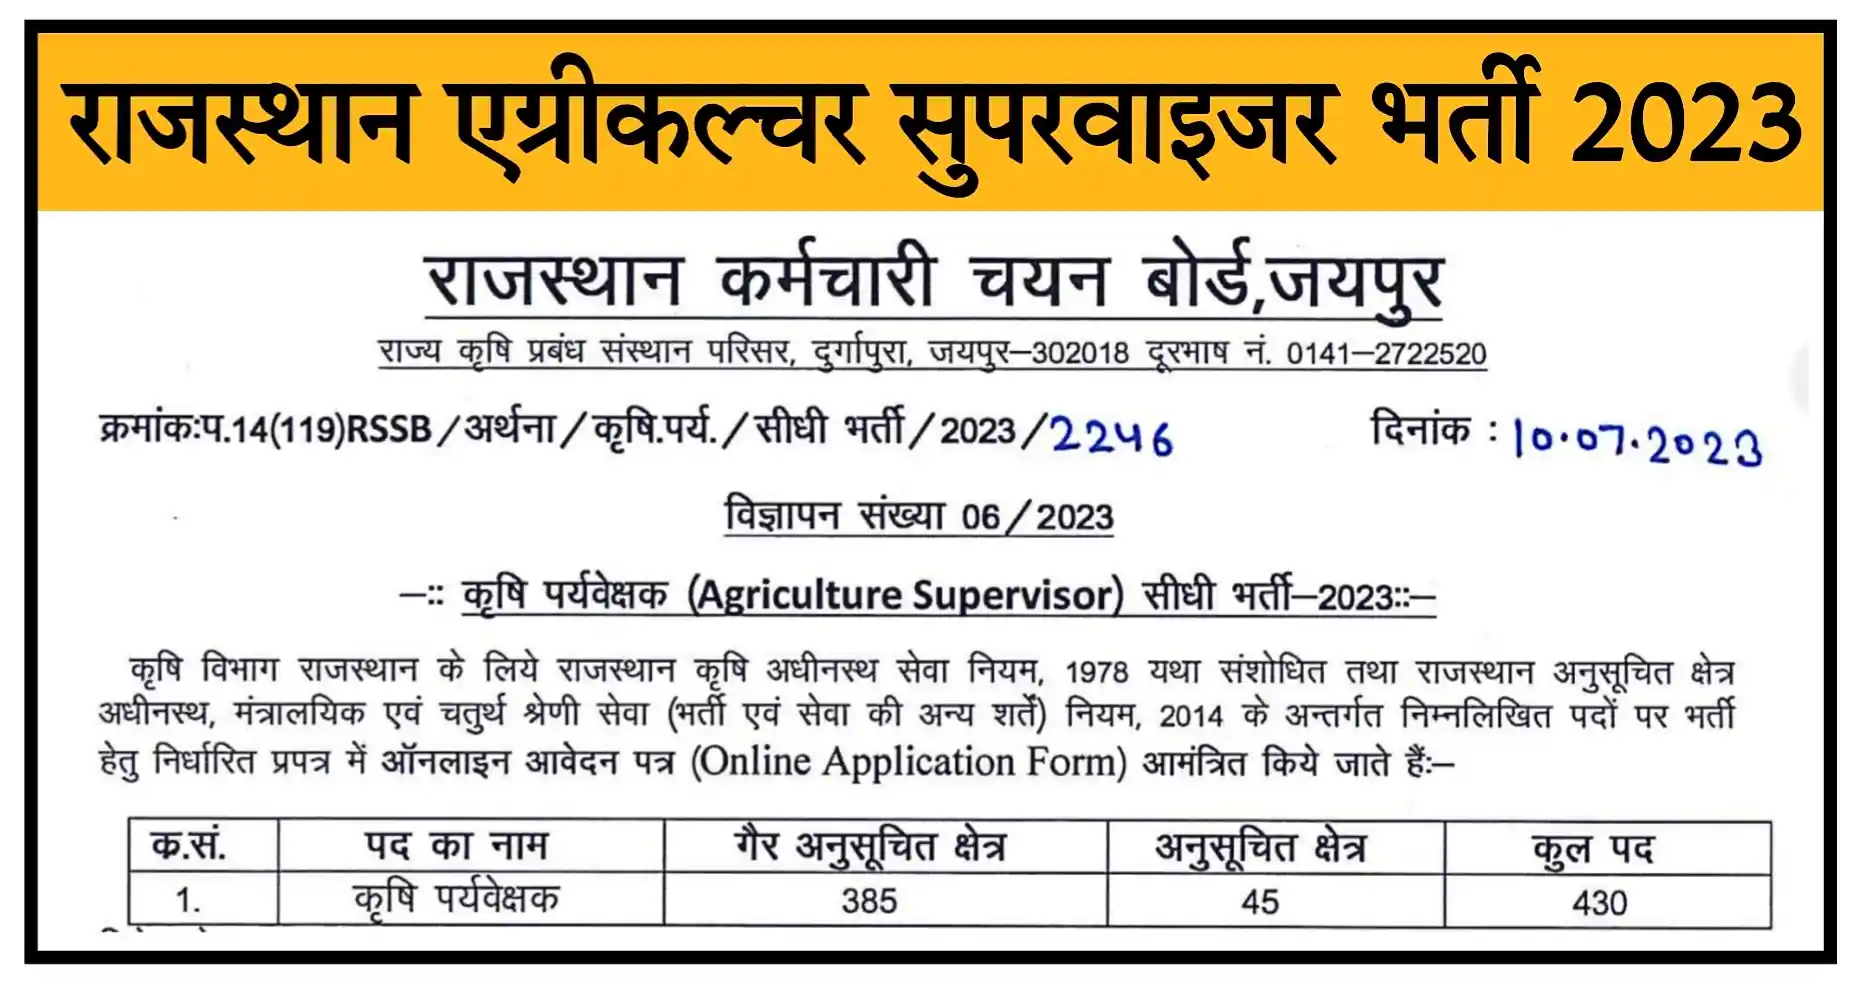 Rajasthan Agriculture Supervisor Recruitment 2023 राजस्थान एग्रीकल्चर सुपरवाइजर के पदों पर निकली भर्ती, संपूर्ण जानकारी देखें